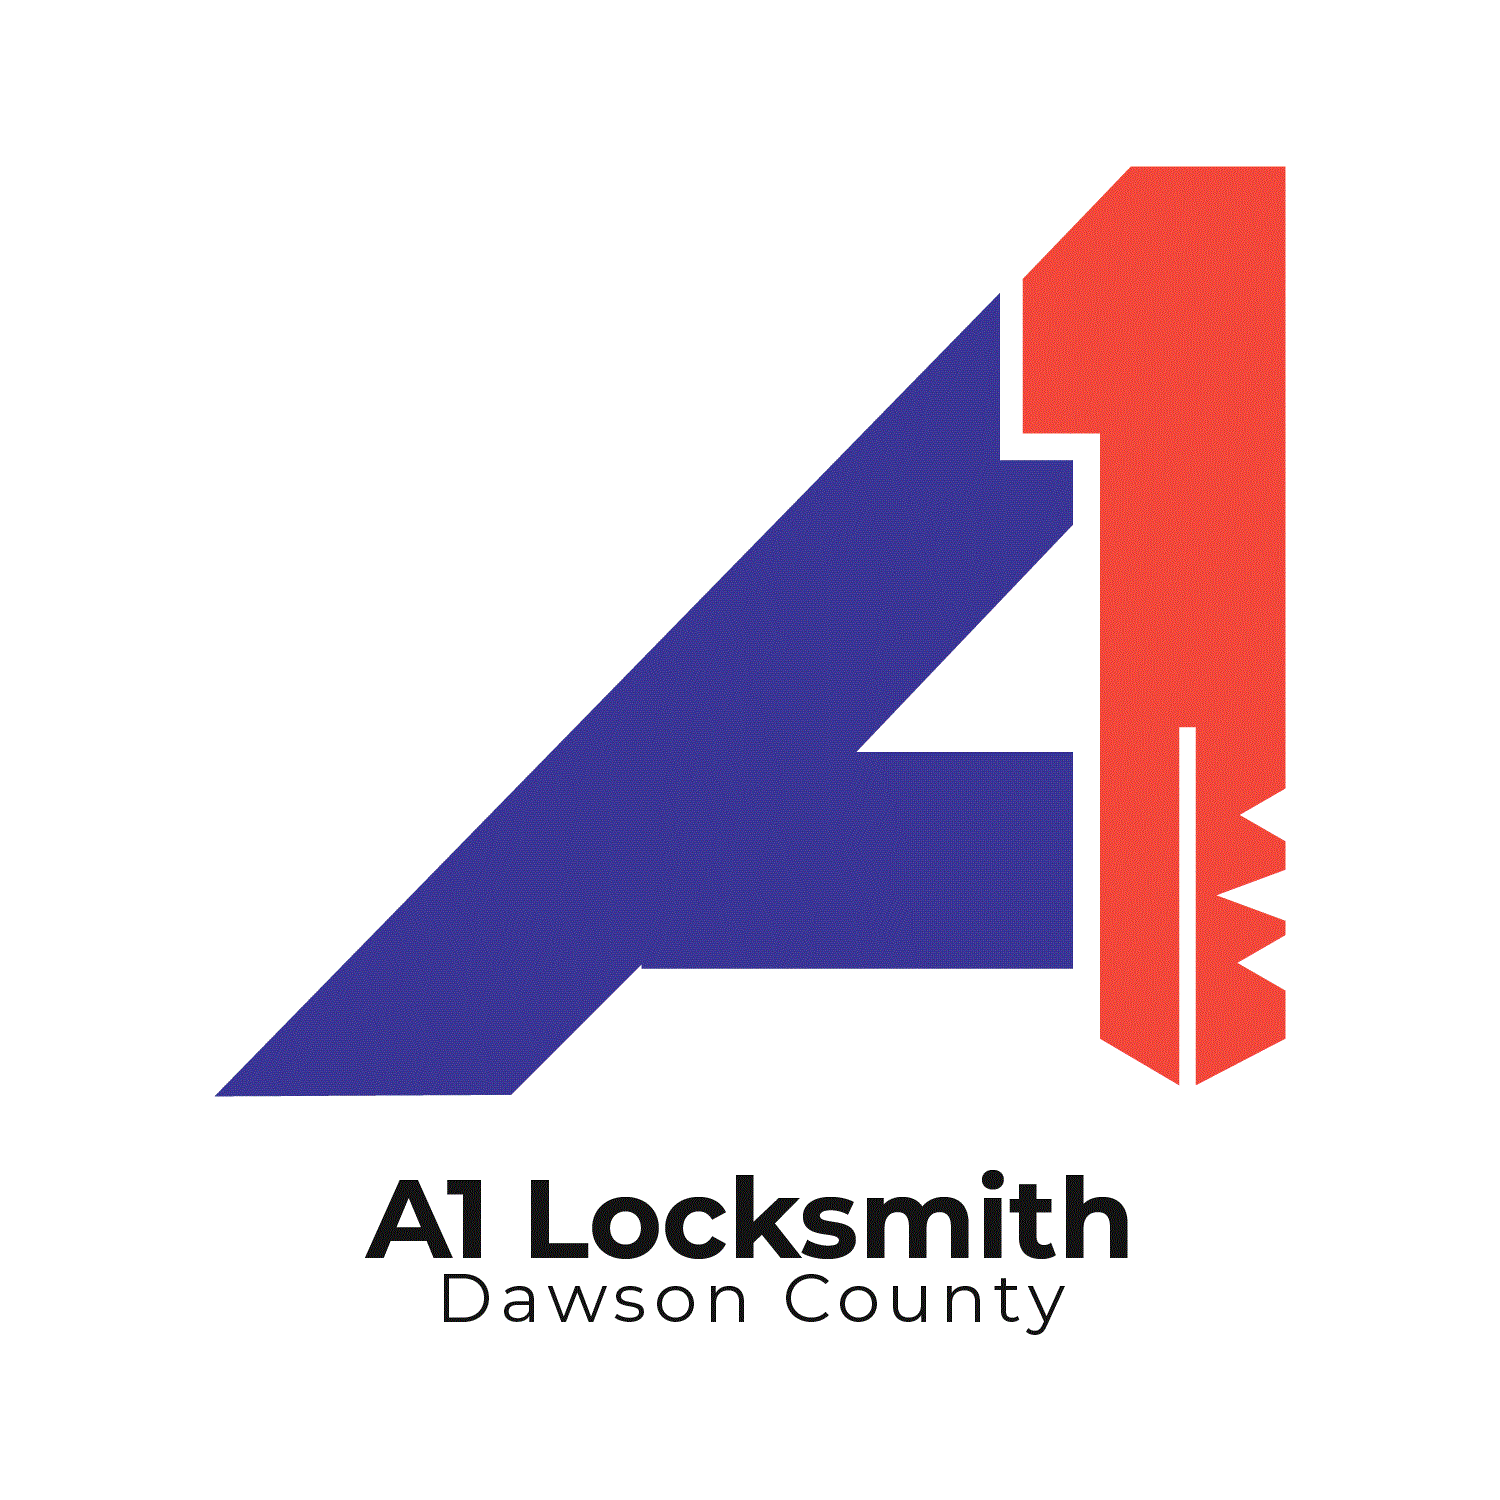 A1 Locksmith of Dawson County